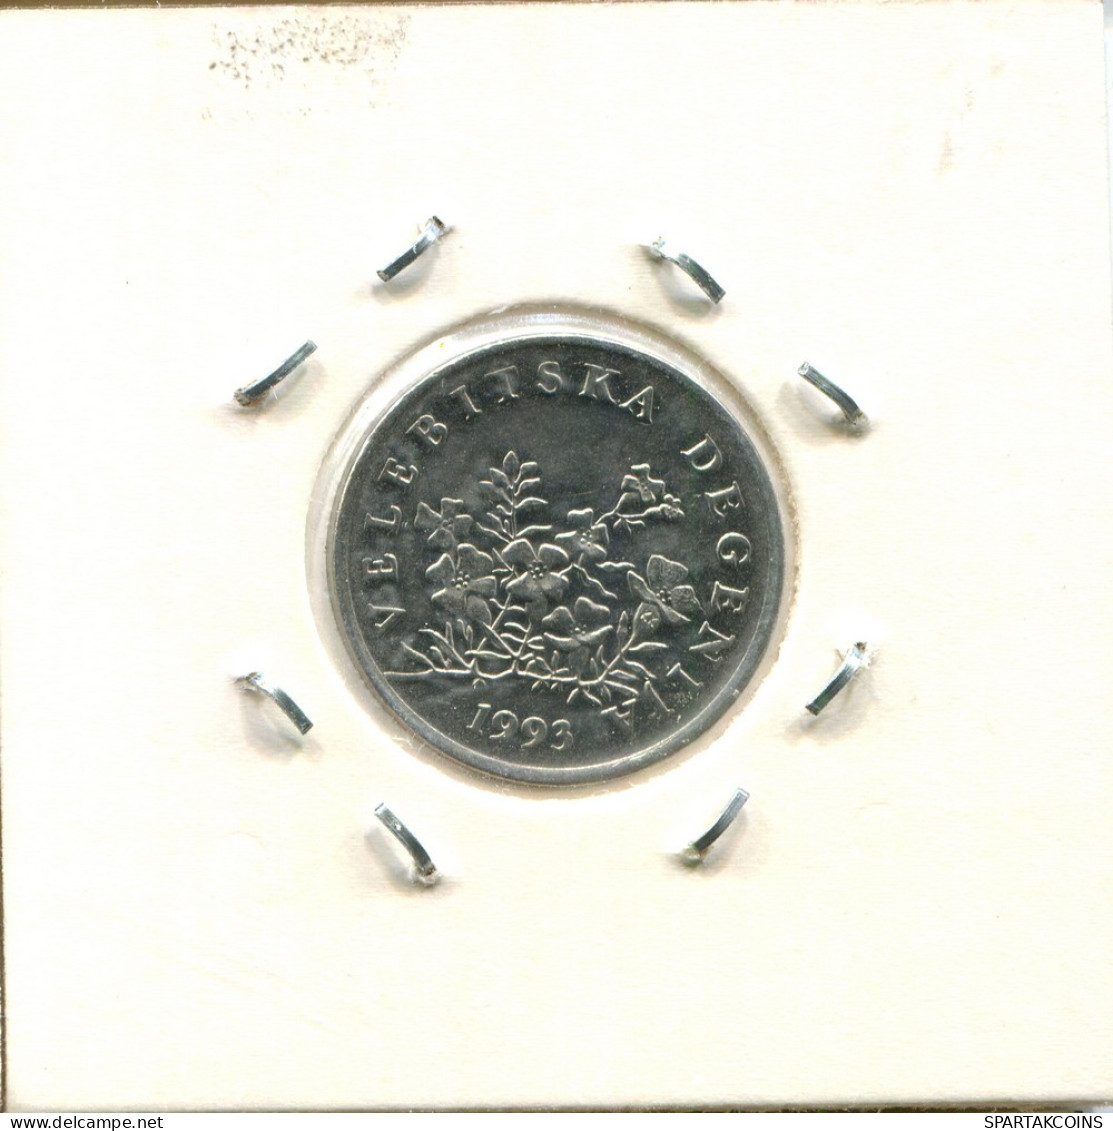 50 LIPA 1993 KROATIEN CROATIA Münze #AS554.D.A - Kroatië